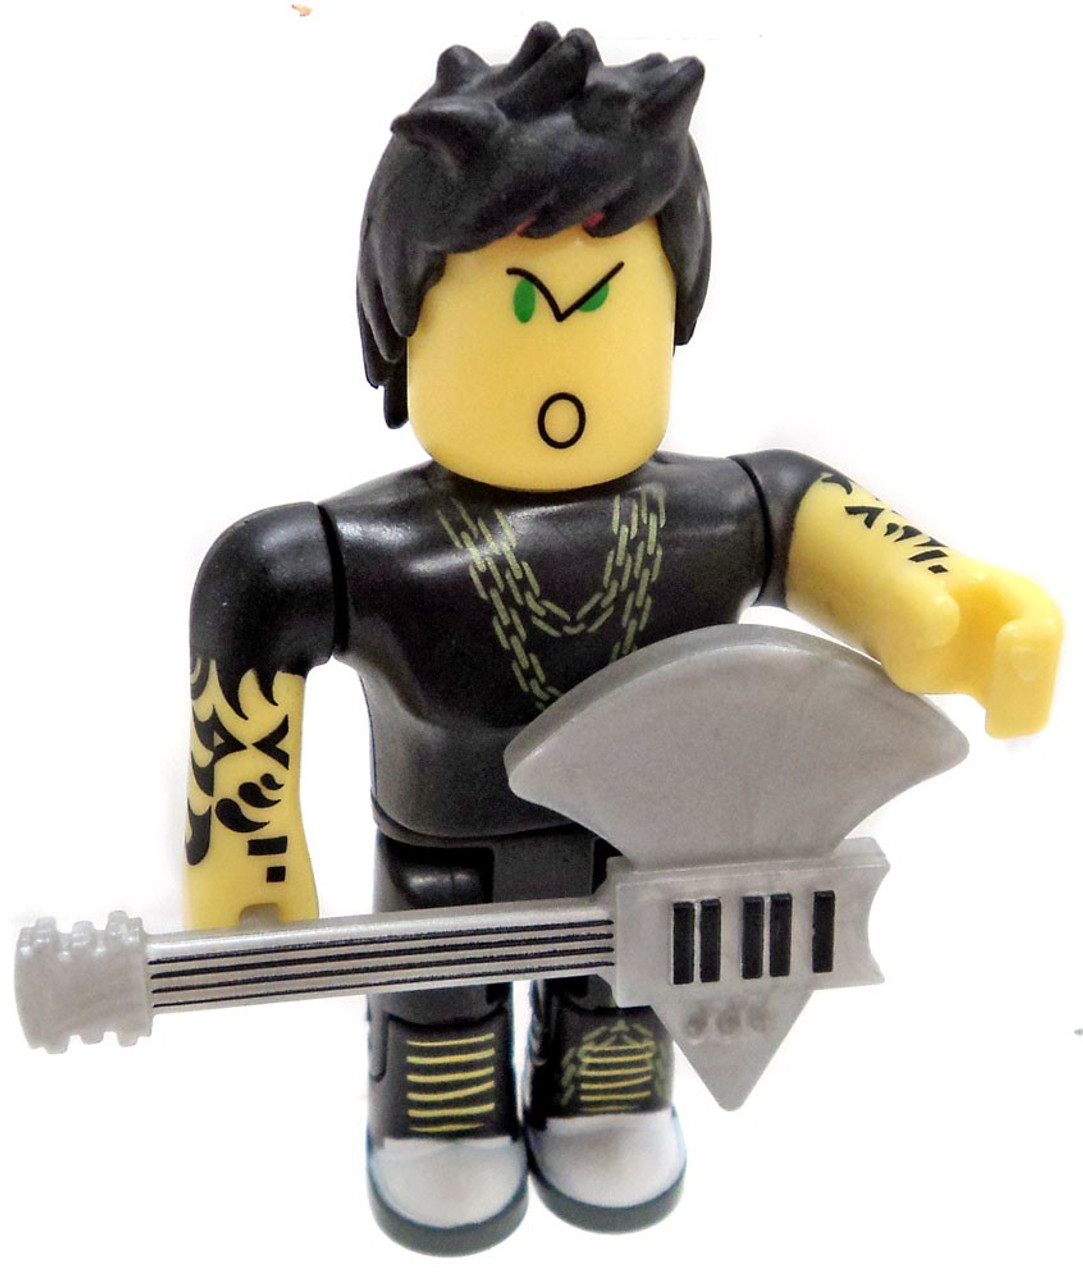 Roblox Punk Rocker With Axe Guitar 3 Minifigure Loose Jazwares Toywiz - stop sign axe roblox